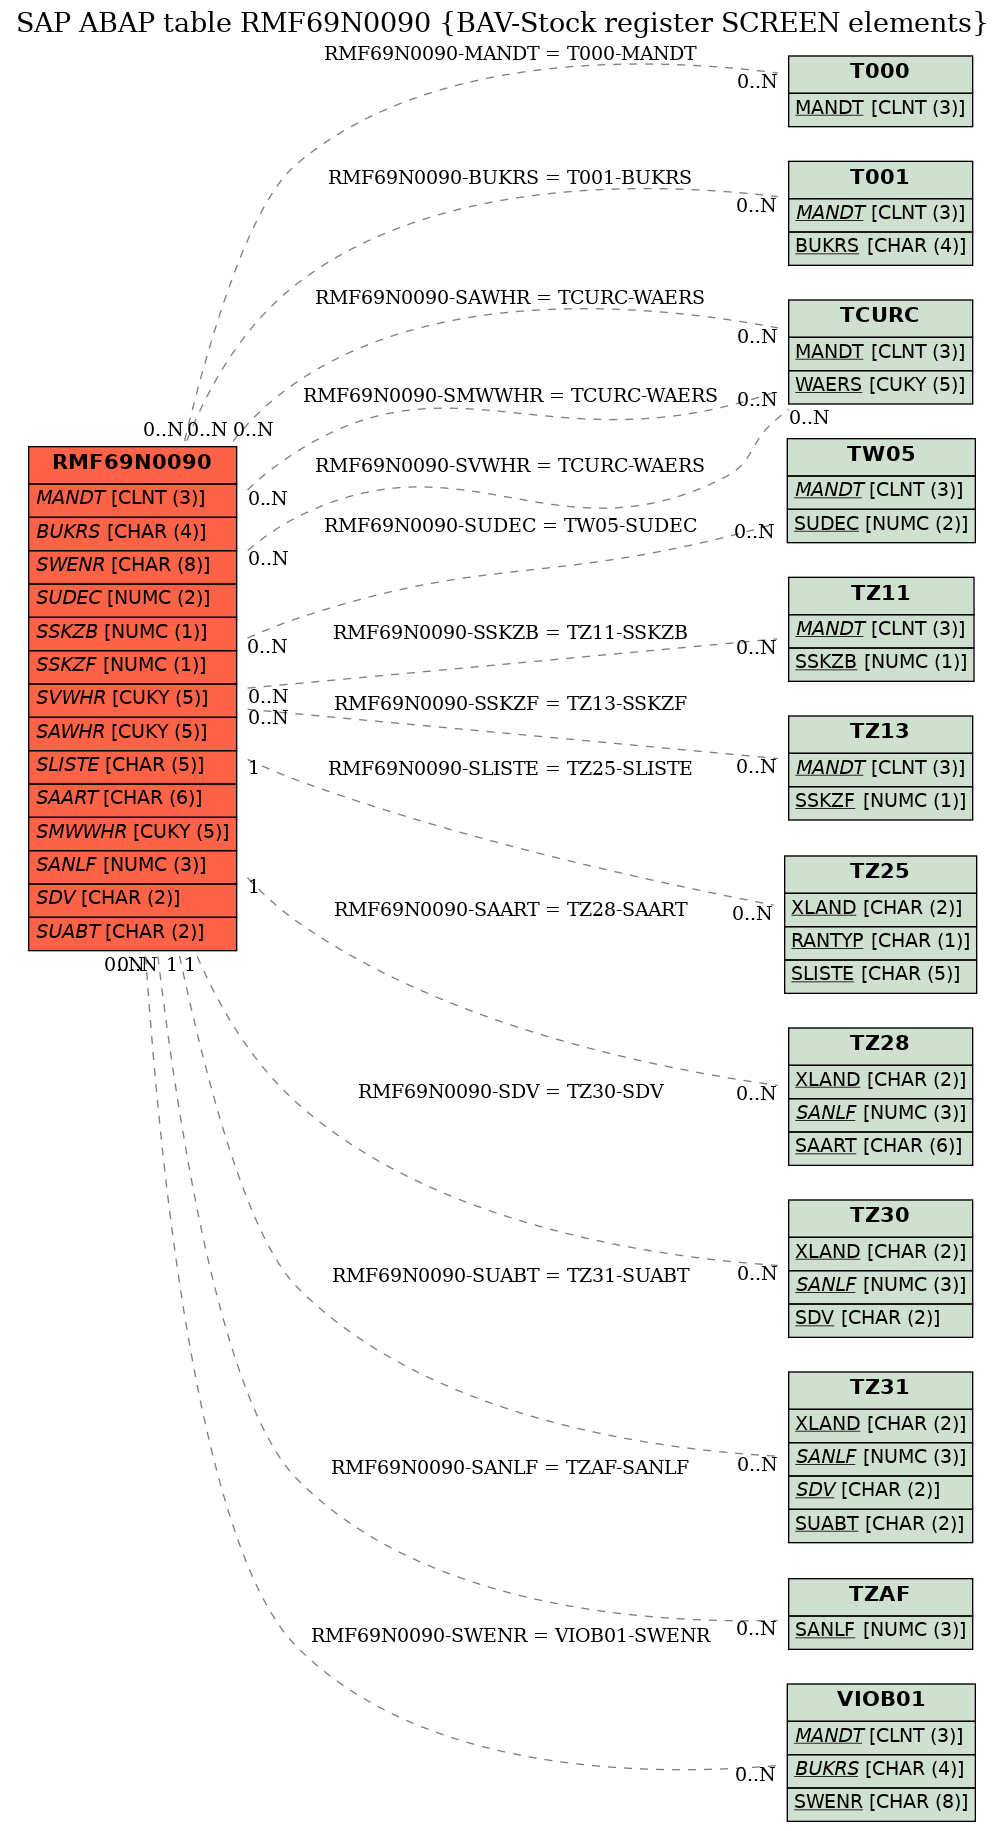 E-R Diagram for table RMF69N0090 (BAV-Stock register SCREEN elements)